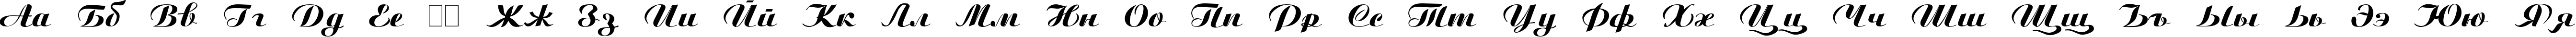 Пример написания русского алфавита шрифтом Script Plain:001.001